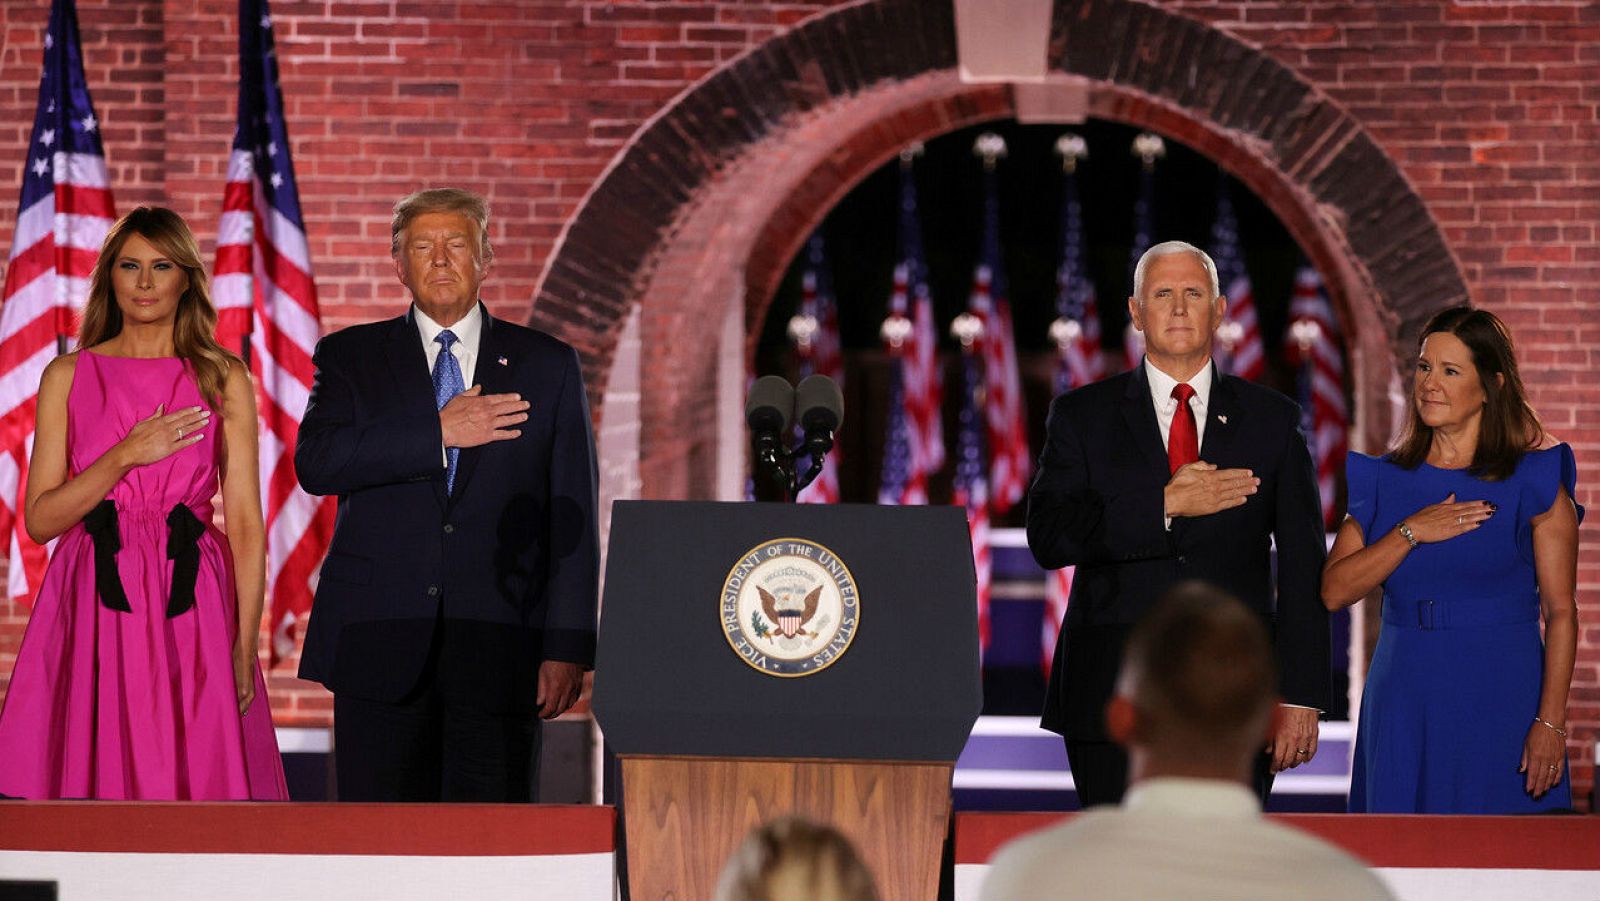 El vicepresidente de los Estados Unidos, Mike Pence, está acompañado en el escenario por el presidente de los Estados Unidos, Donald Trump, la primera dama, Melania Trump, y su esposa, Karen Pence, después de pronunciar su discurso en la Convención N